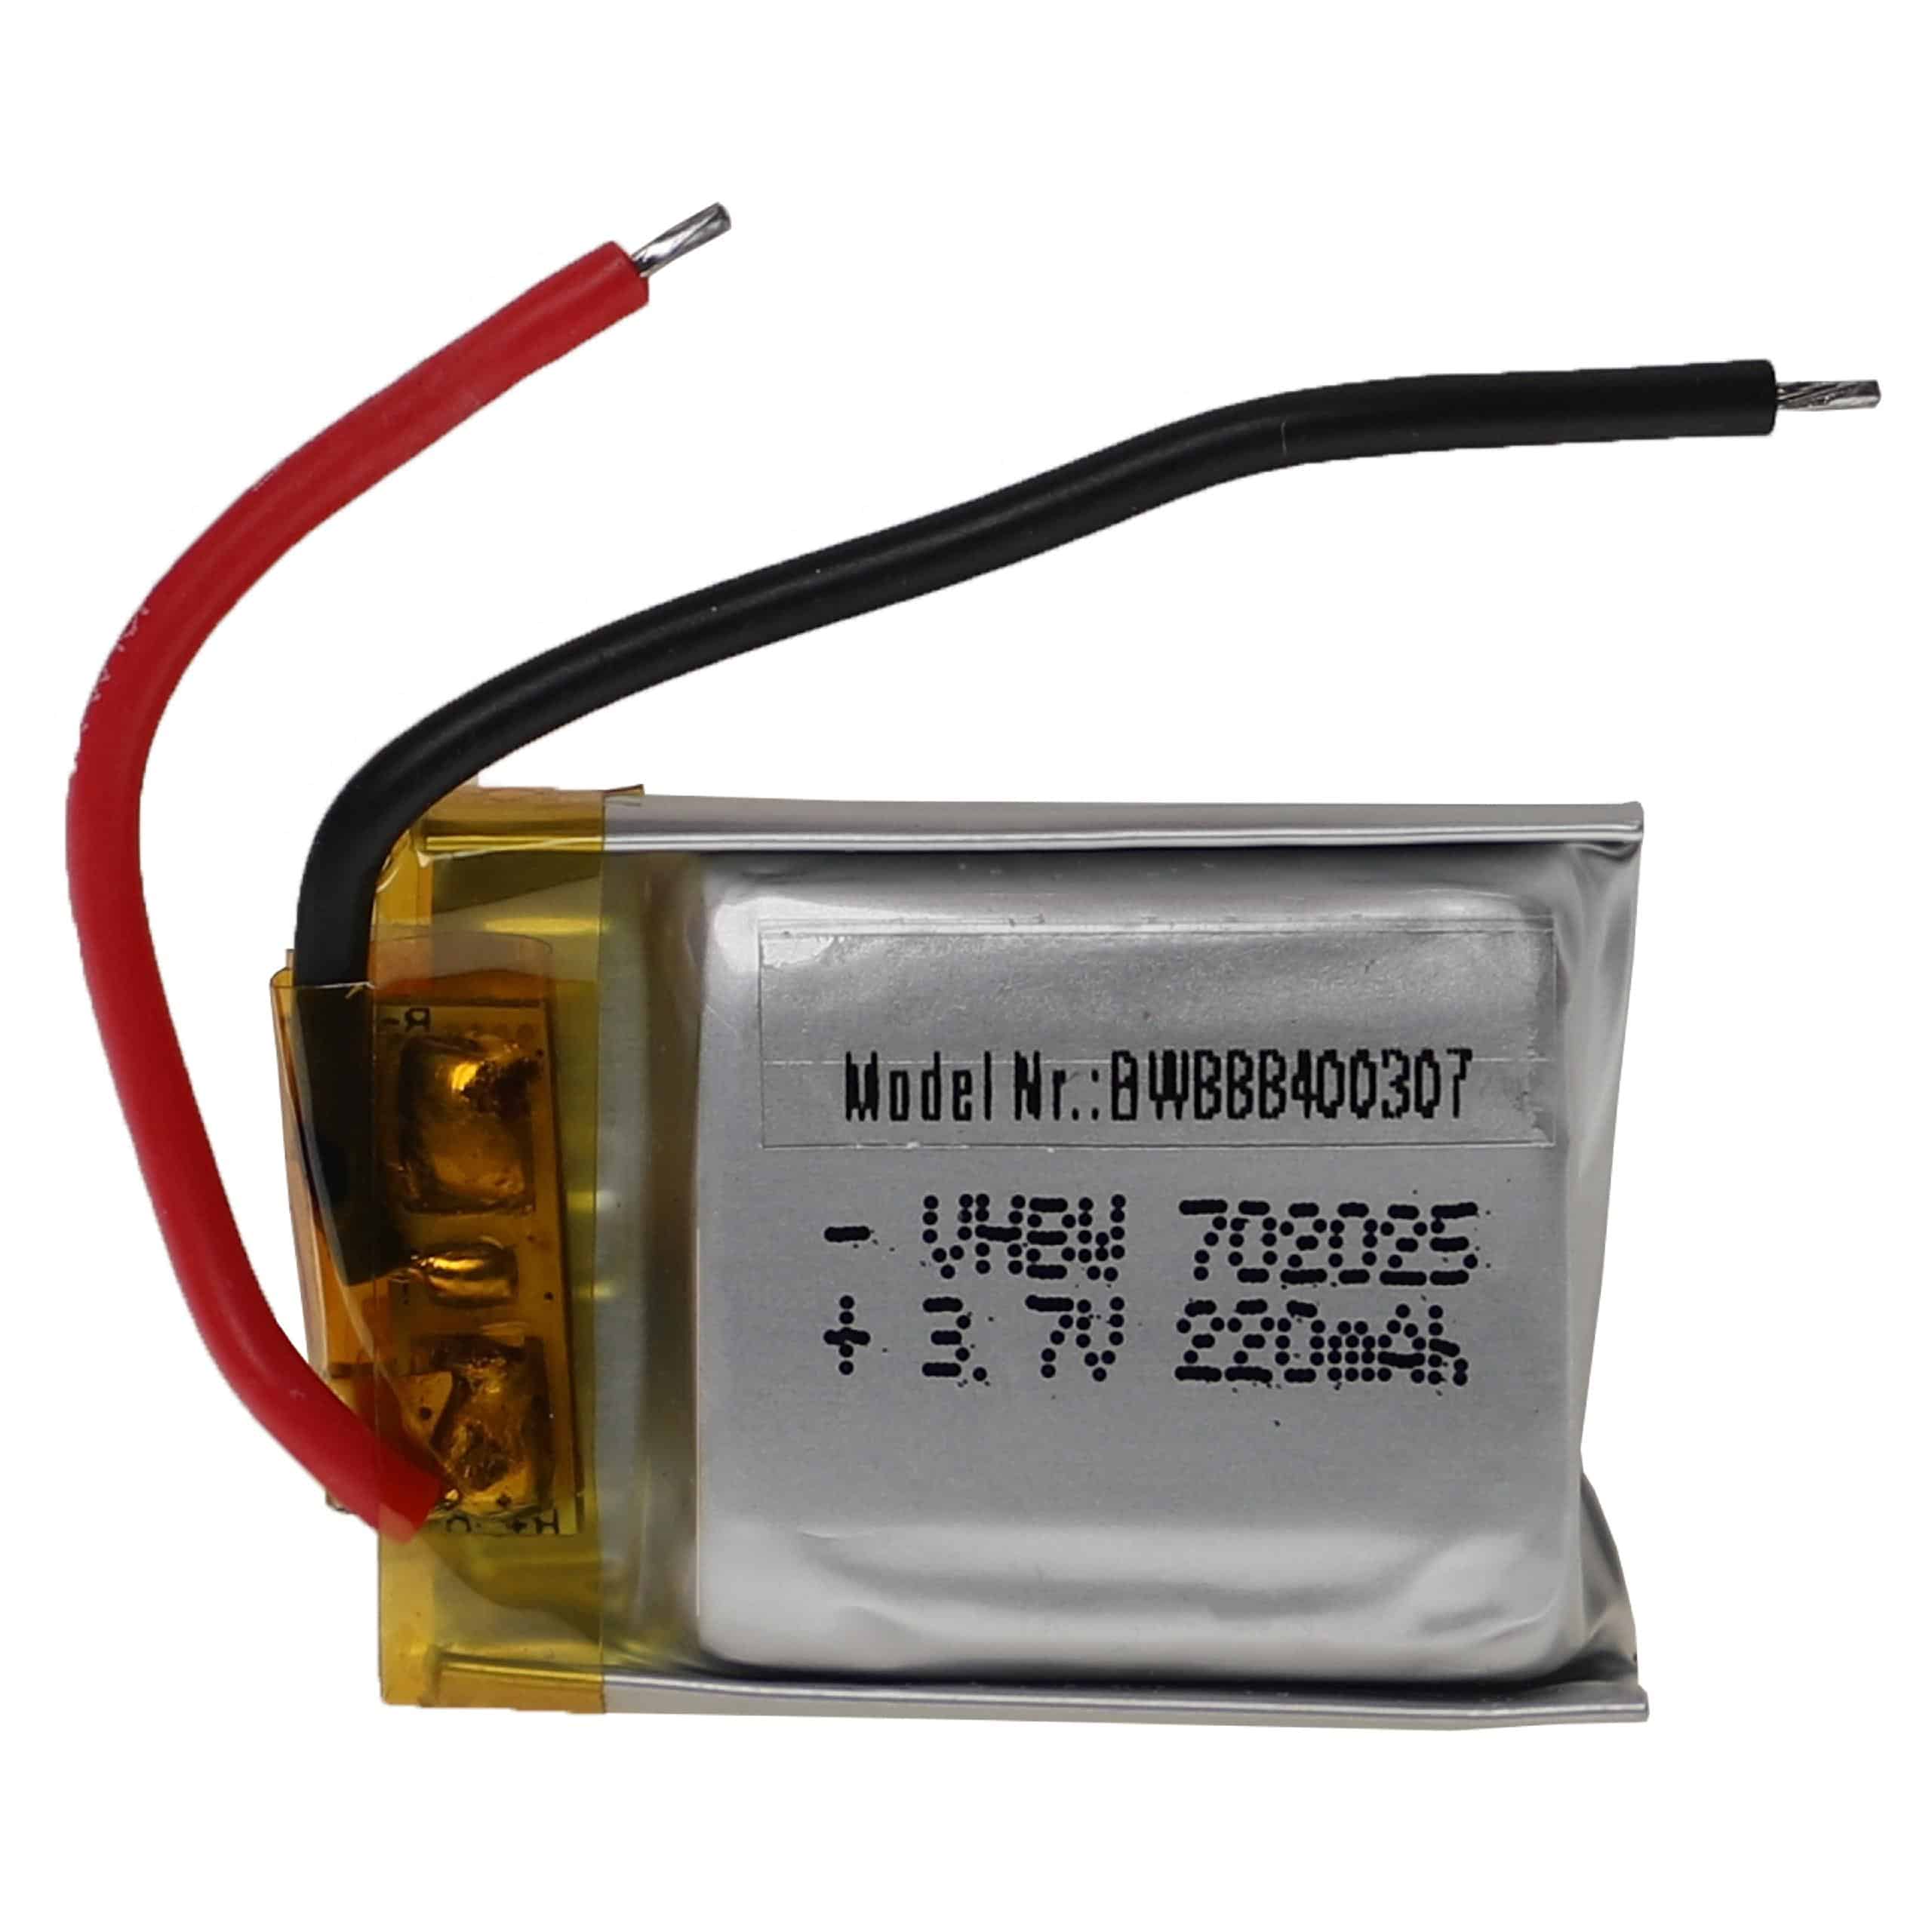 Akumulator do modeli zdalnie sterowanych RC - 220 mAh 3,7 V LiPo, bez wtyczki